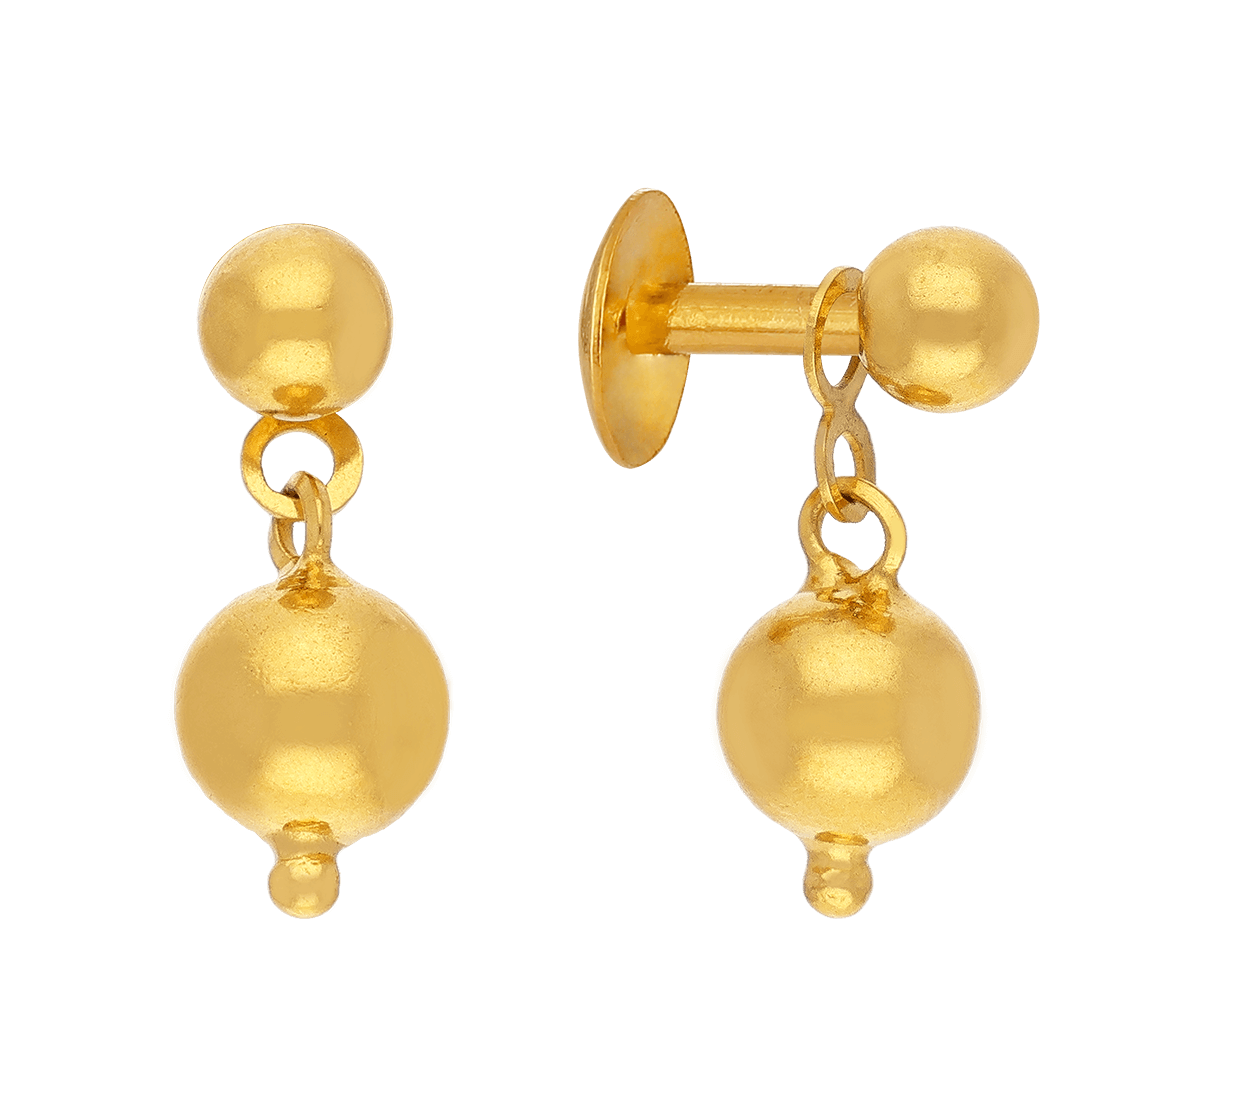 Share 72+ gold drop earrings online best - 3tdesign.edu.vn